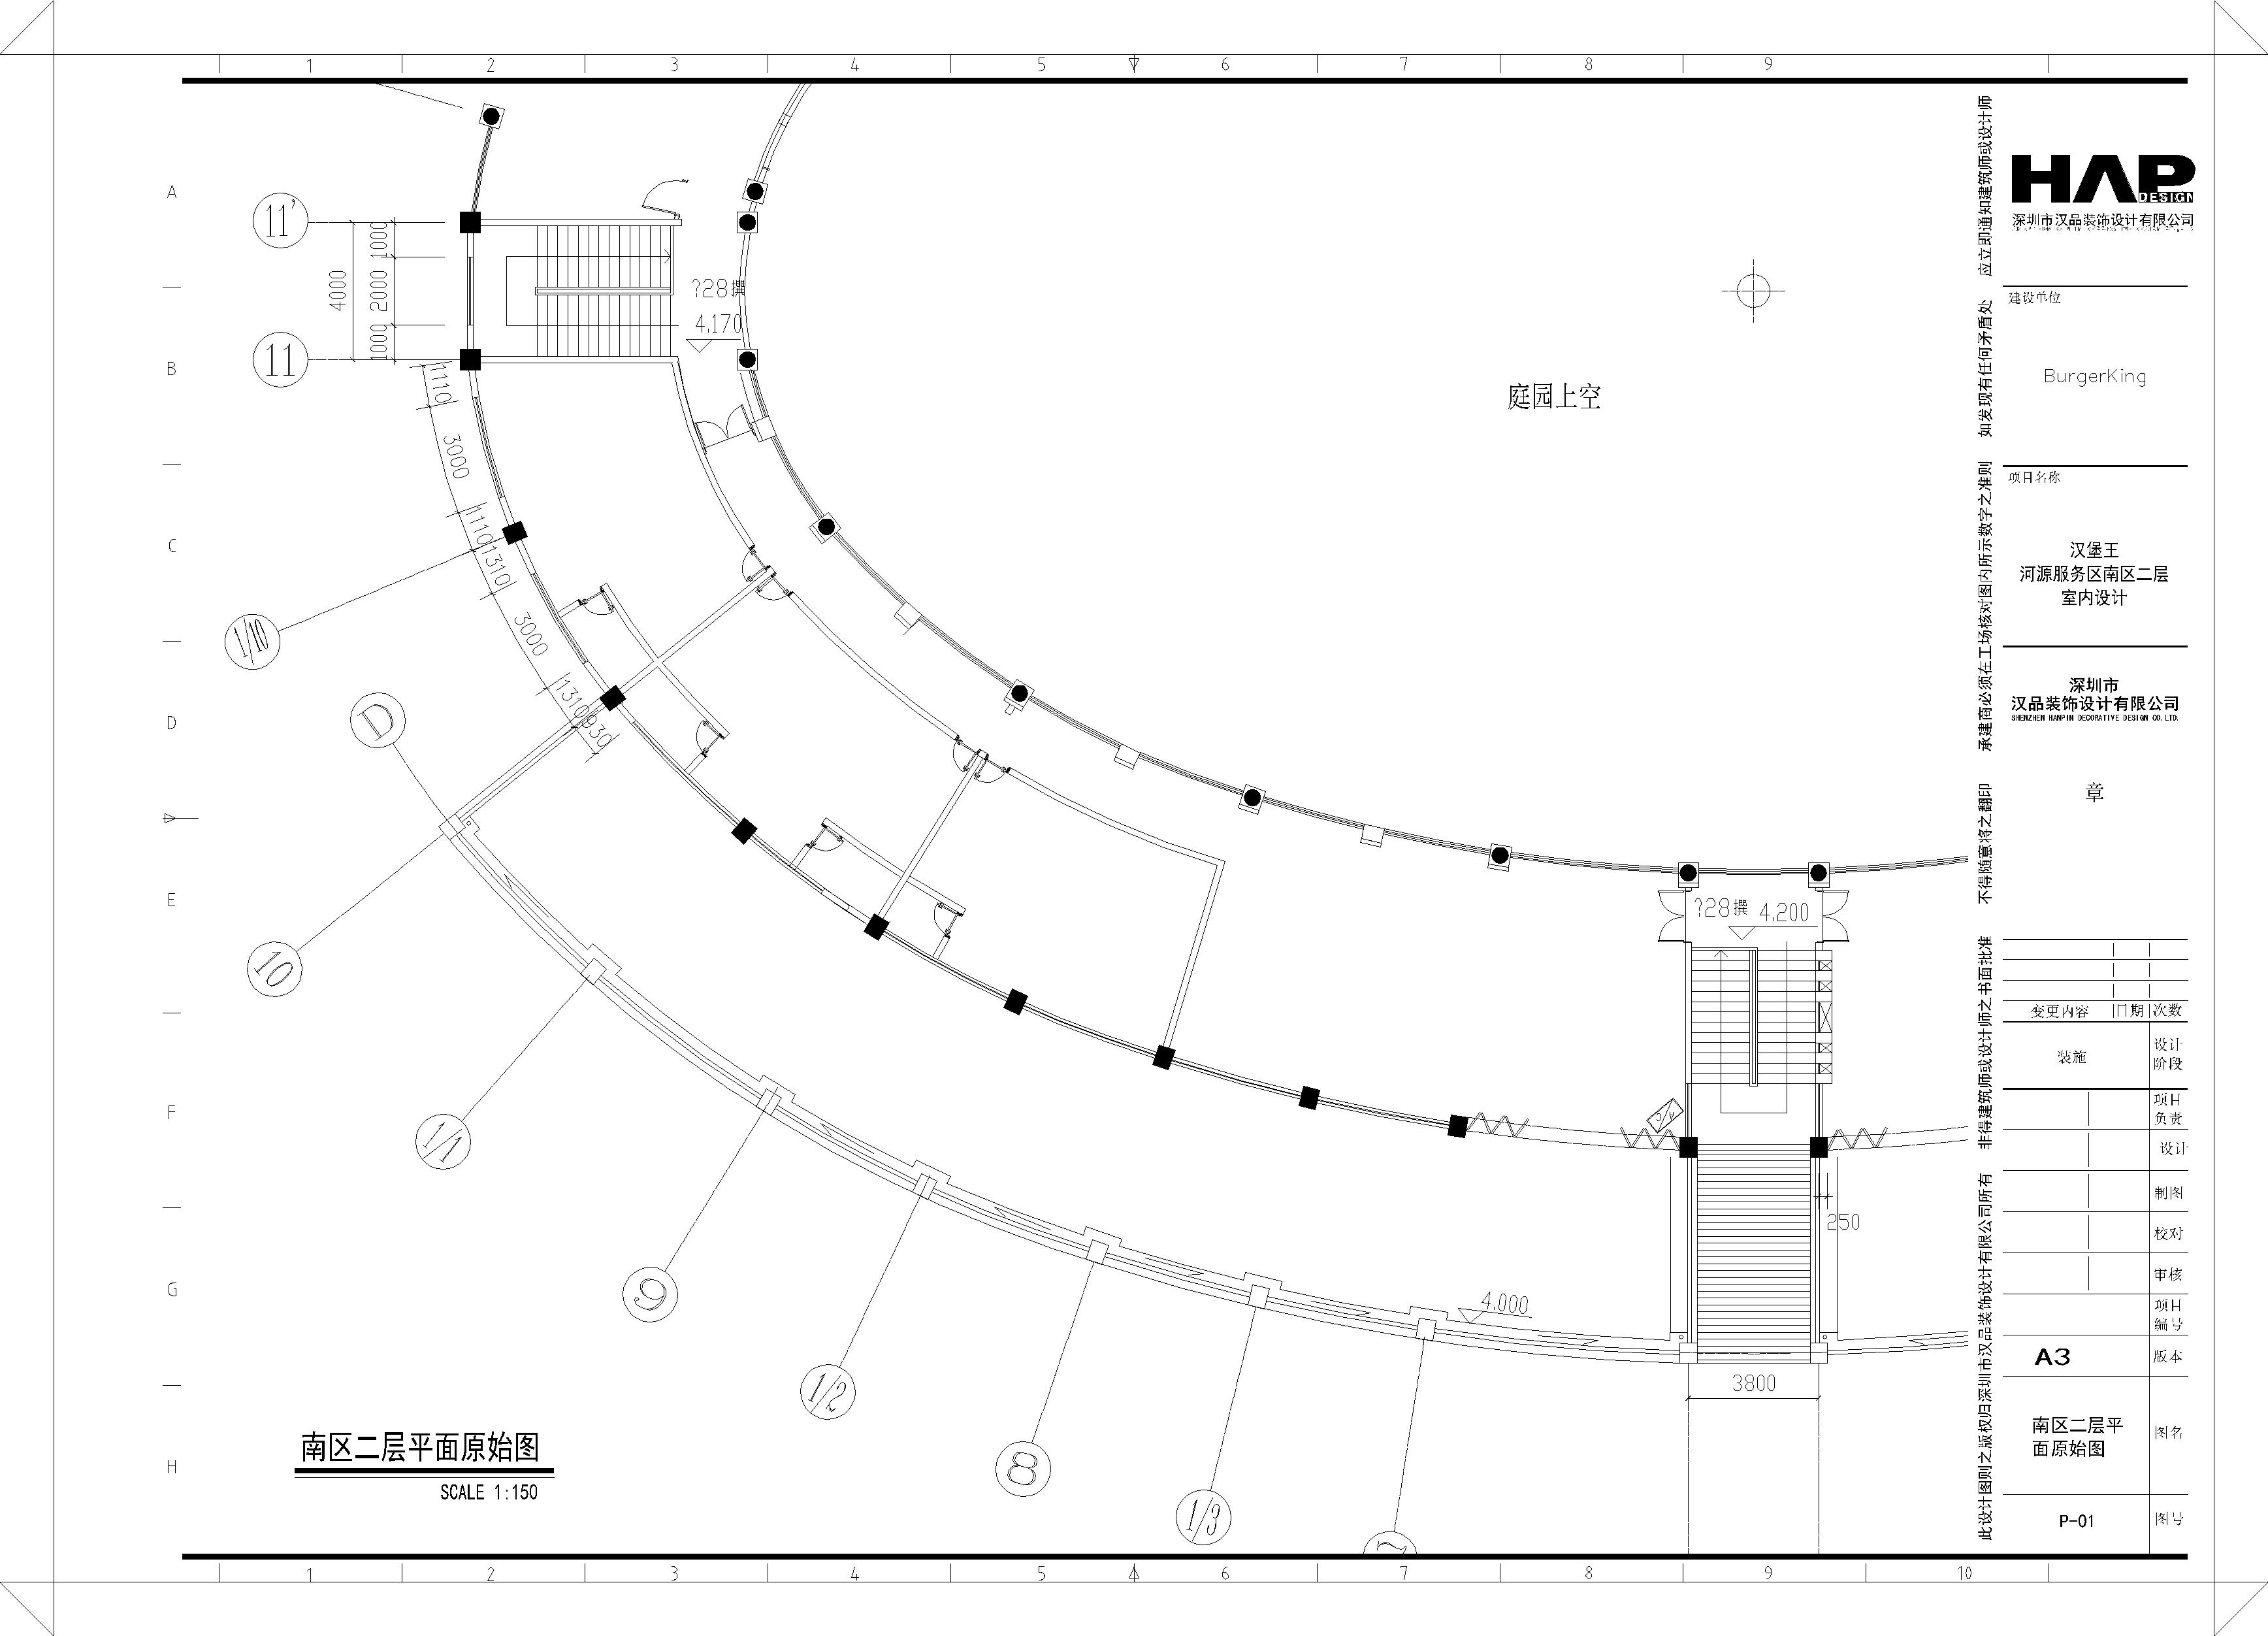 汉某王快餐店服务区-热水服务区南区二层平面布置图CAD